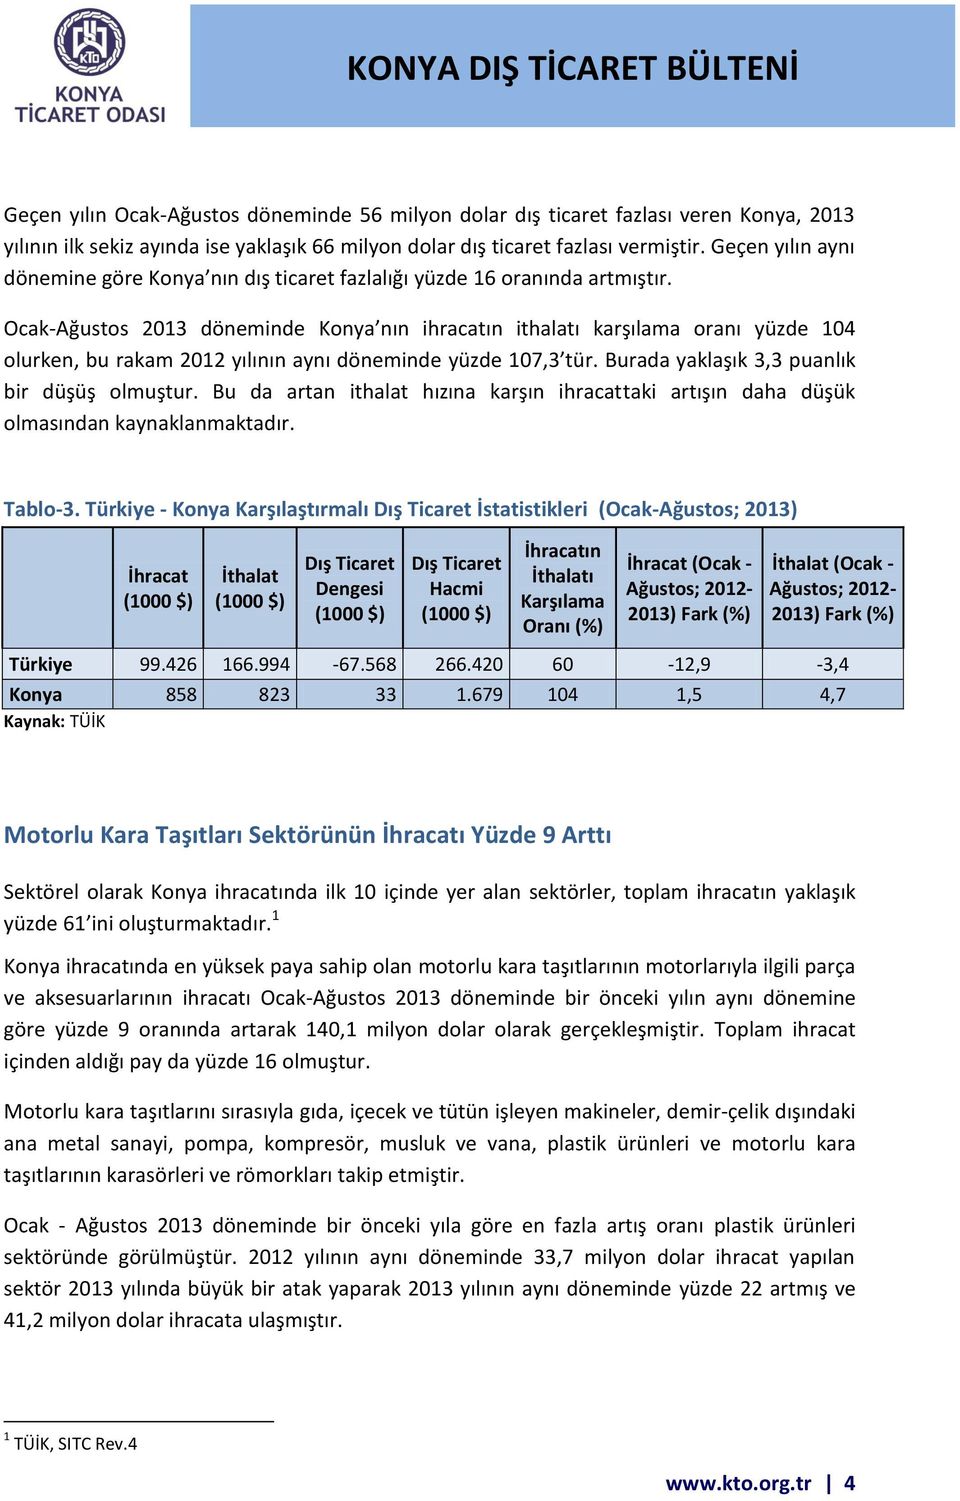 Ocak-Ağustos 2013 döneminde Konya nın ihracatın ithalatı karşılama oranı yüzde 104 olurken, bu rakam 2012 yılının aynı döneminde yüzde 107,3 tür. Burada yaklaşık 3,3 puanlık bir düşüş olmuştur.